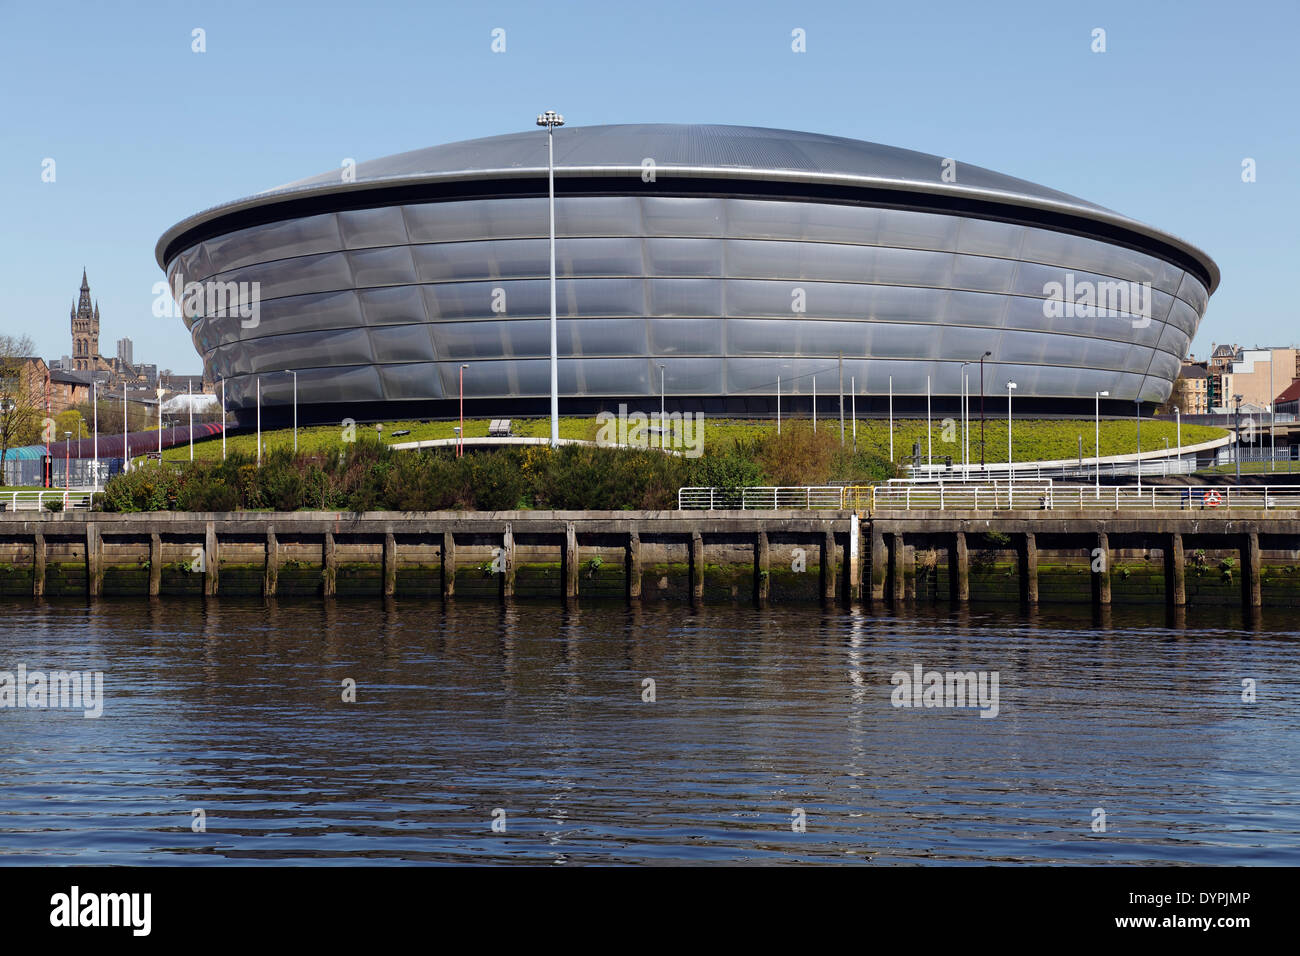 Le SSE Hydro Arena sur le SEC Center de Glasgow, en Écosse, au Royaume-Uni Banque D'Images